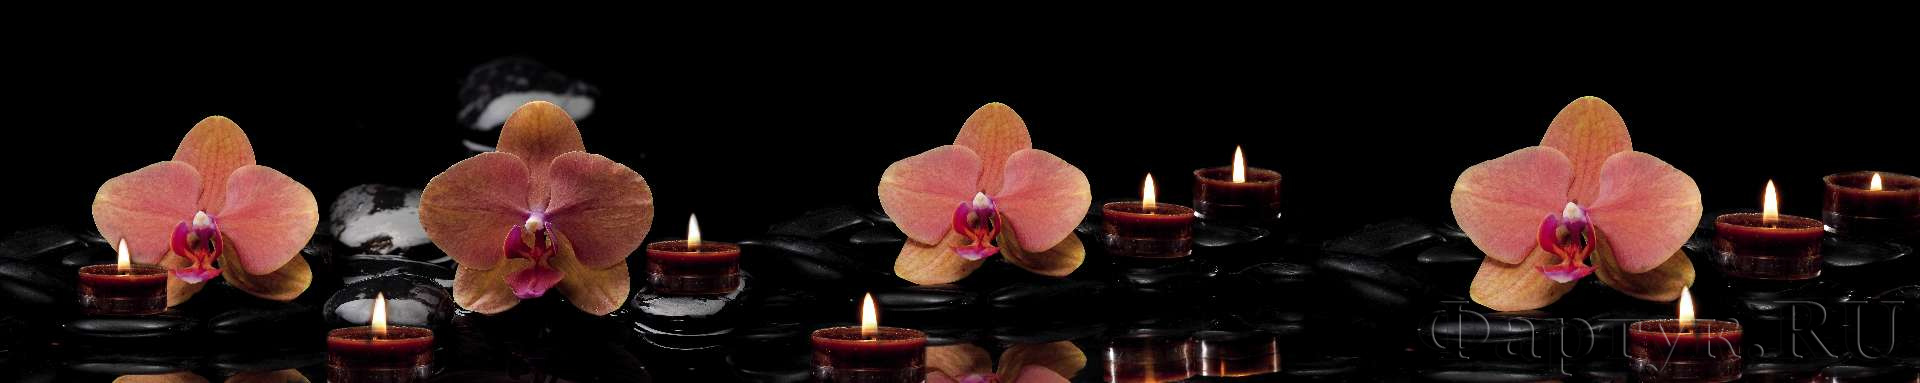 Орхидеи, свечи, камни на темном фоне